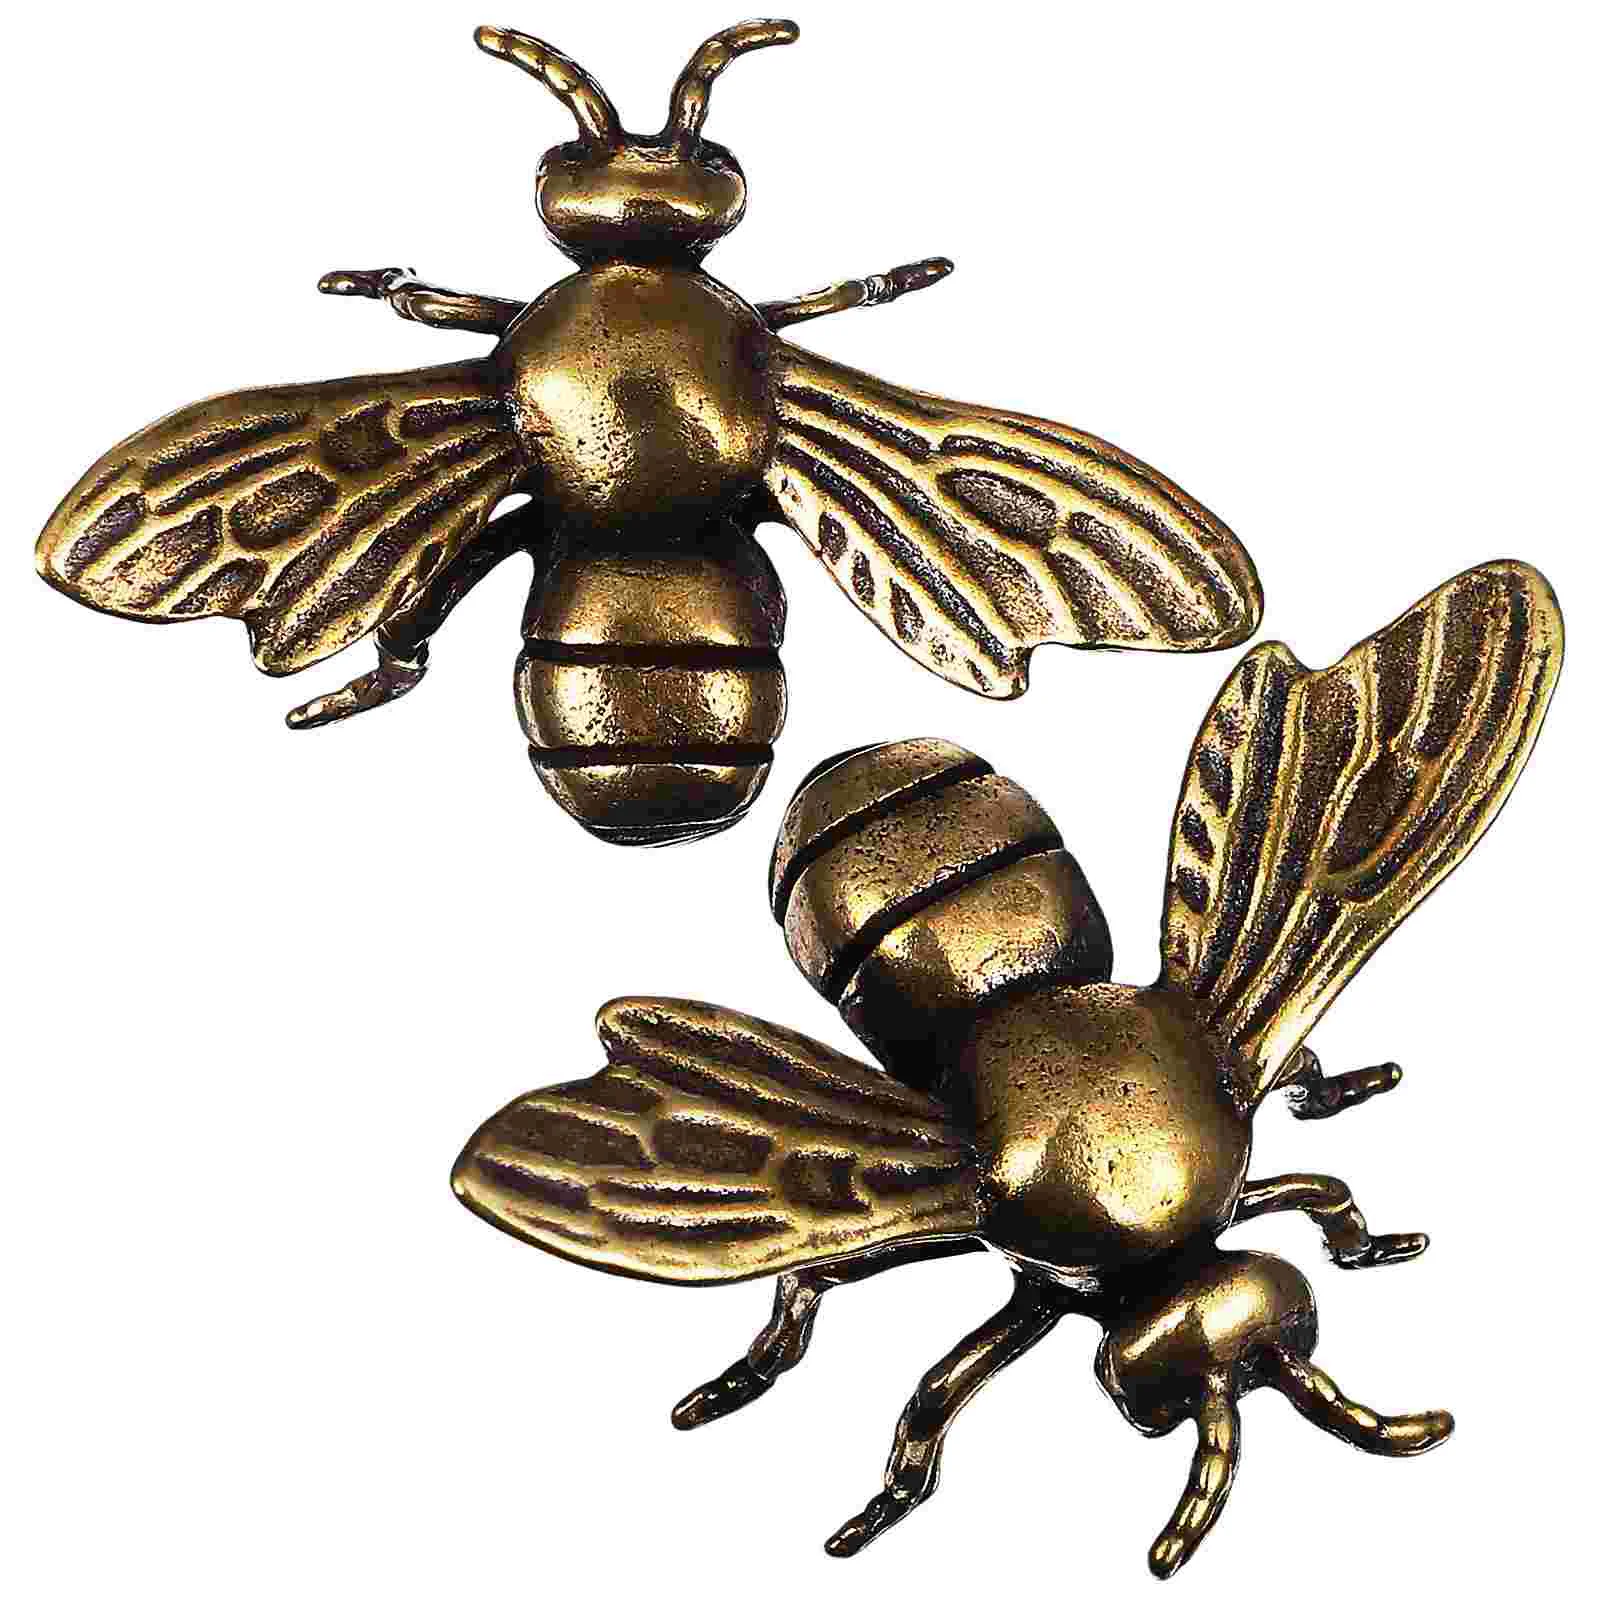 

2 Pcs Bee Ornaments Bee Decor Fake Bees Miniature Bee Figurine Metal Figurines Desktop Animal Figurines